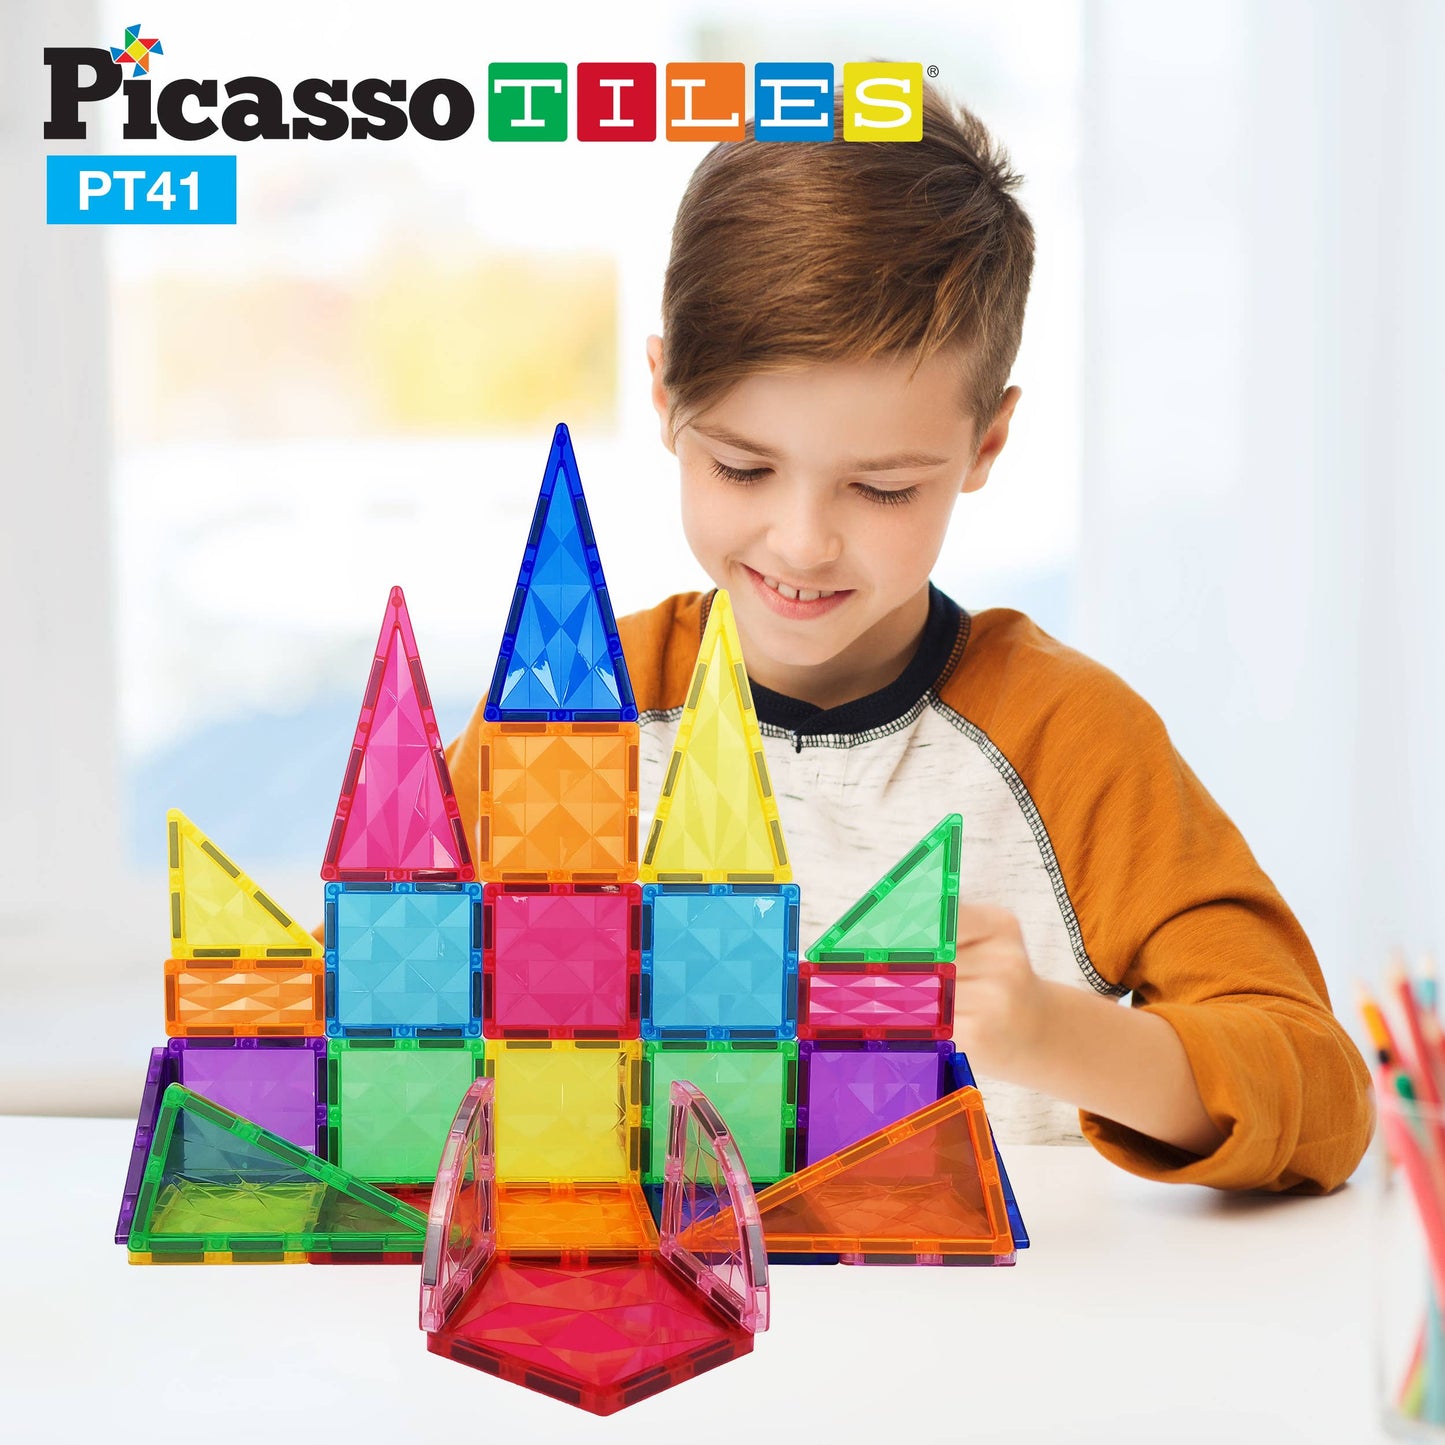 PicassoTiles 41 Piece Prism Magnetic Building Block Set PT41